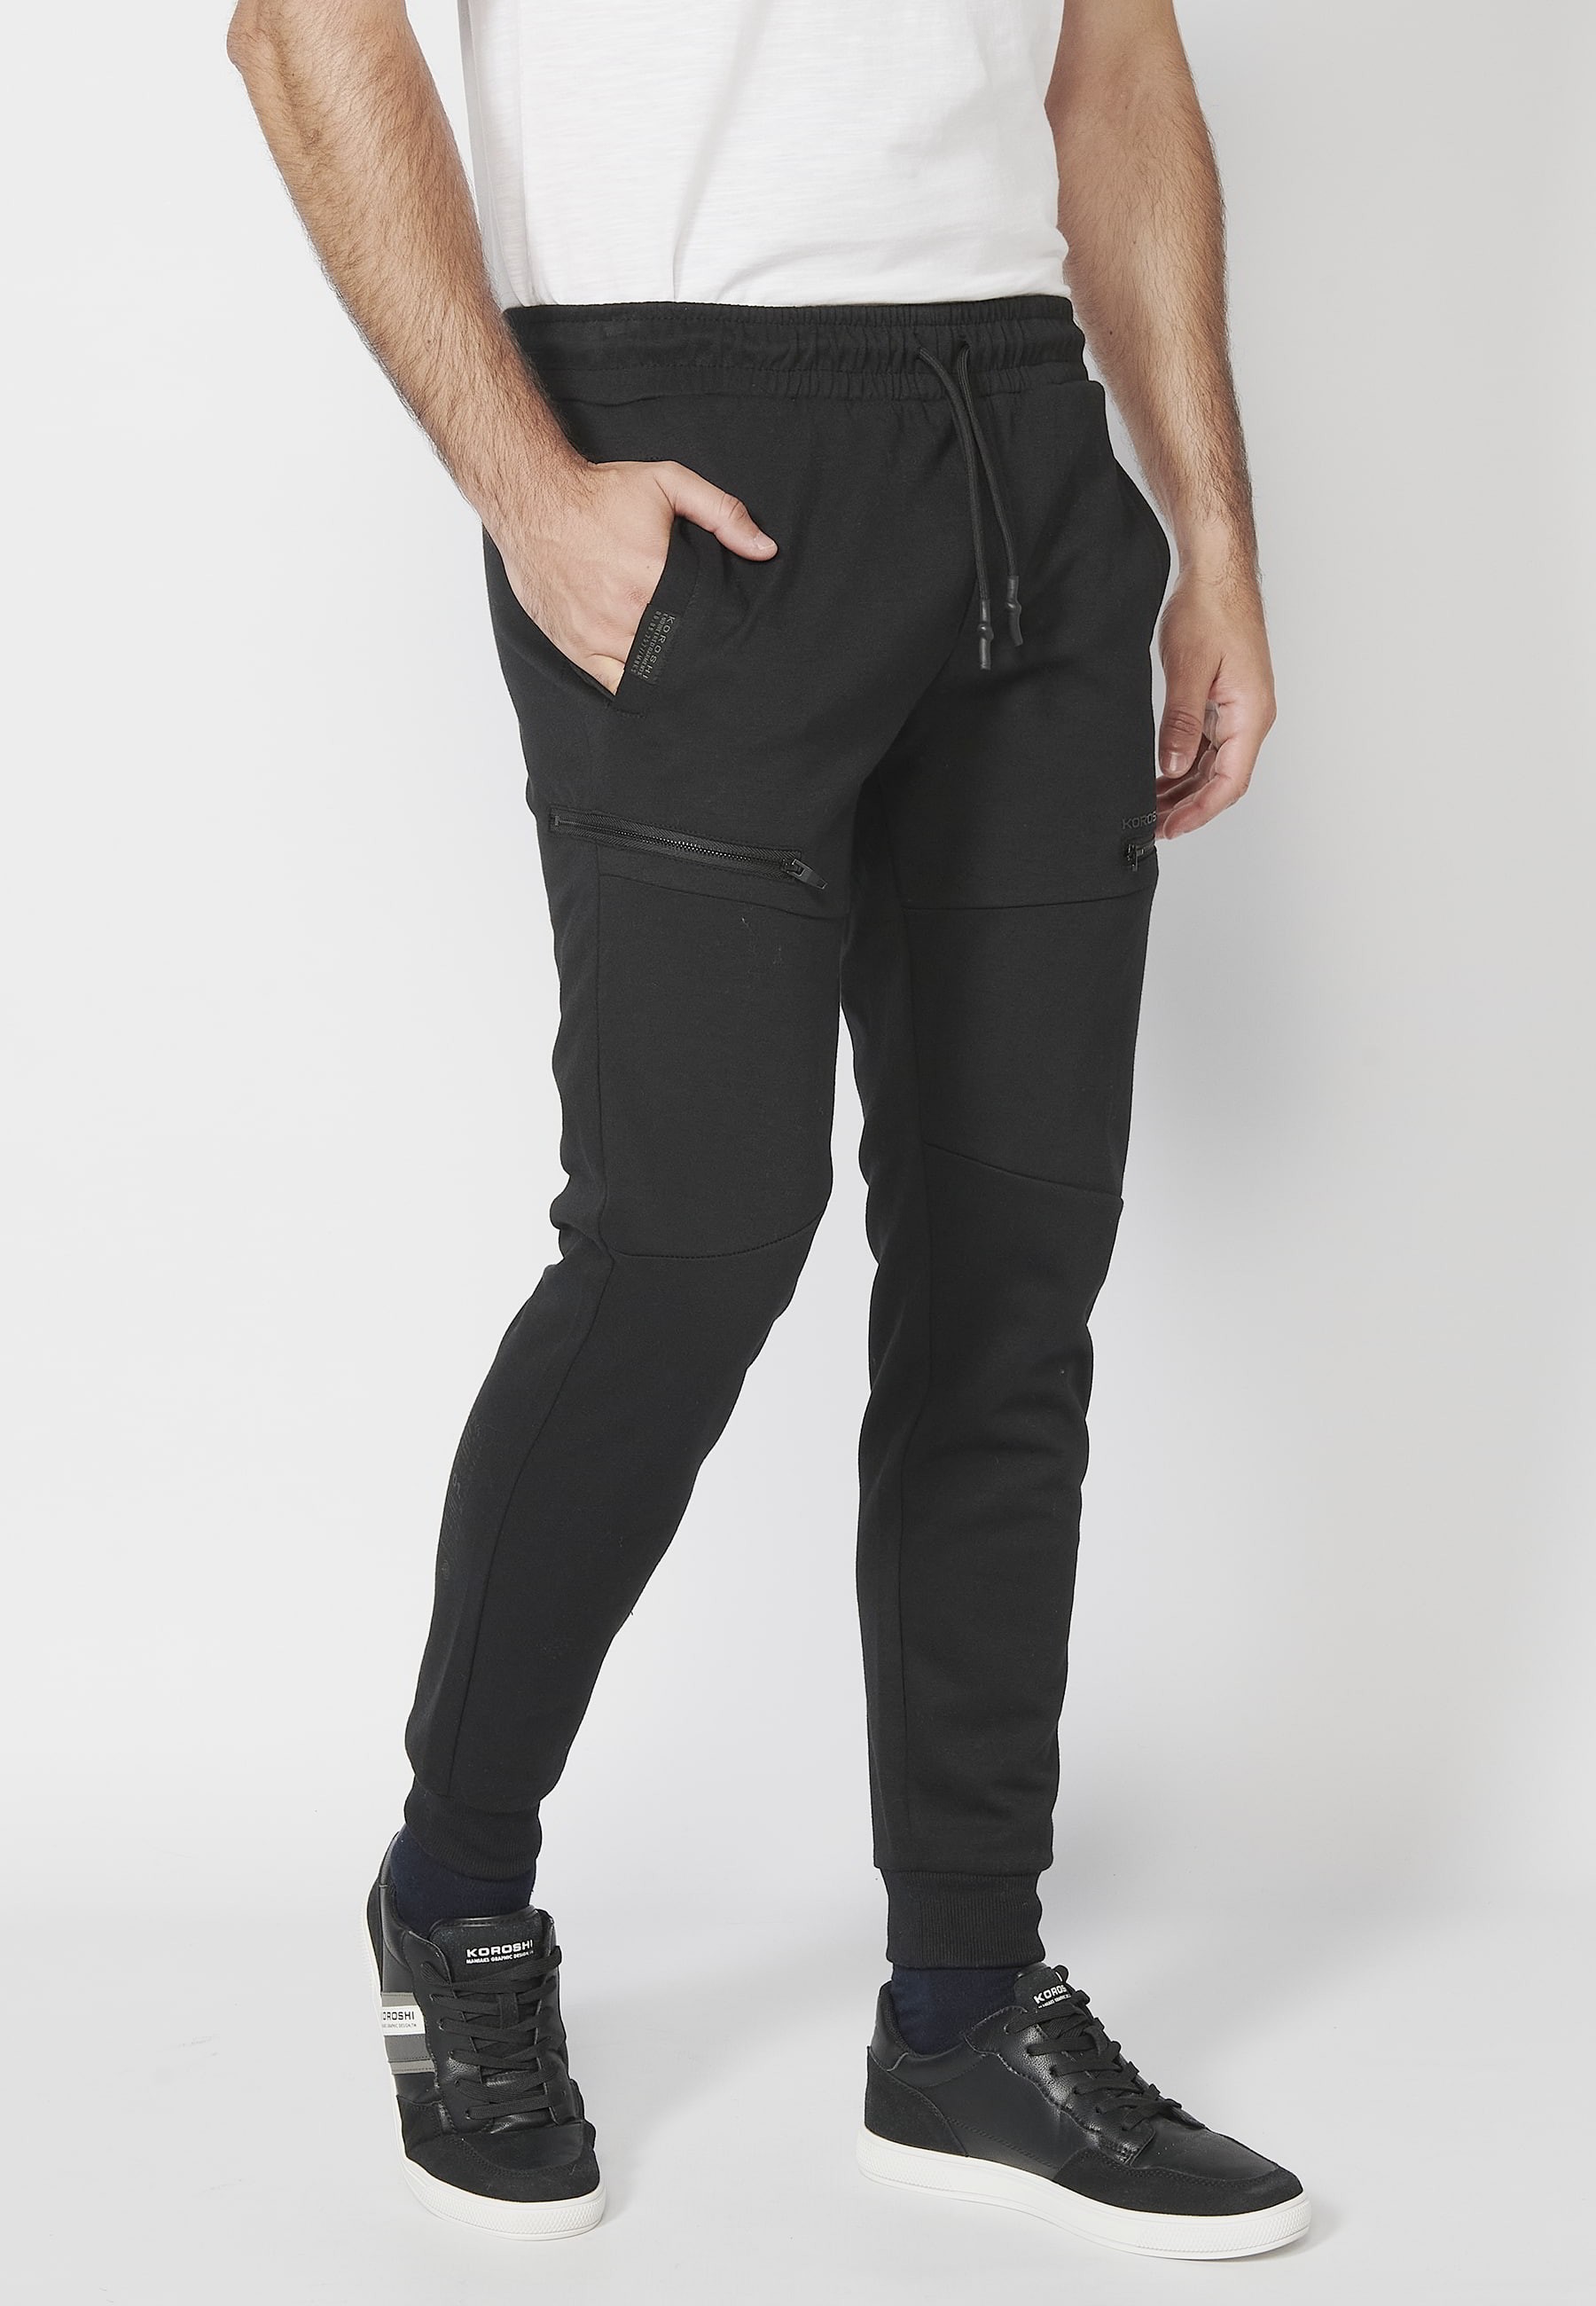 Pantalon de jogging long avec ceinture élastiquée et cordon de serrage avec découpes aux genoux de couleur Noir pour Homme